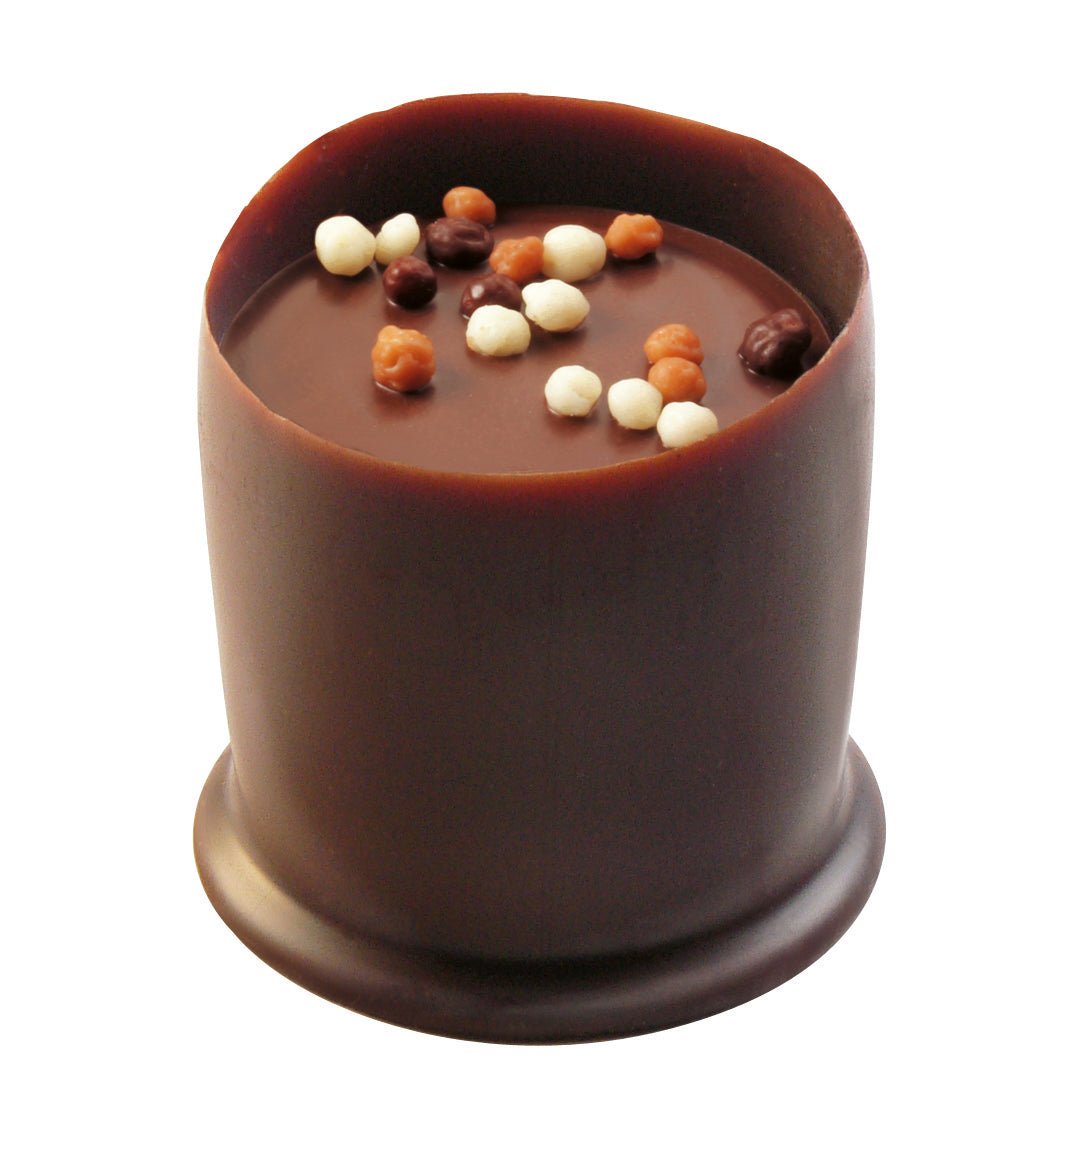 Belgische gefüllte Chocolate Cups "Originals" - MHD